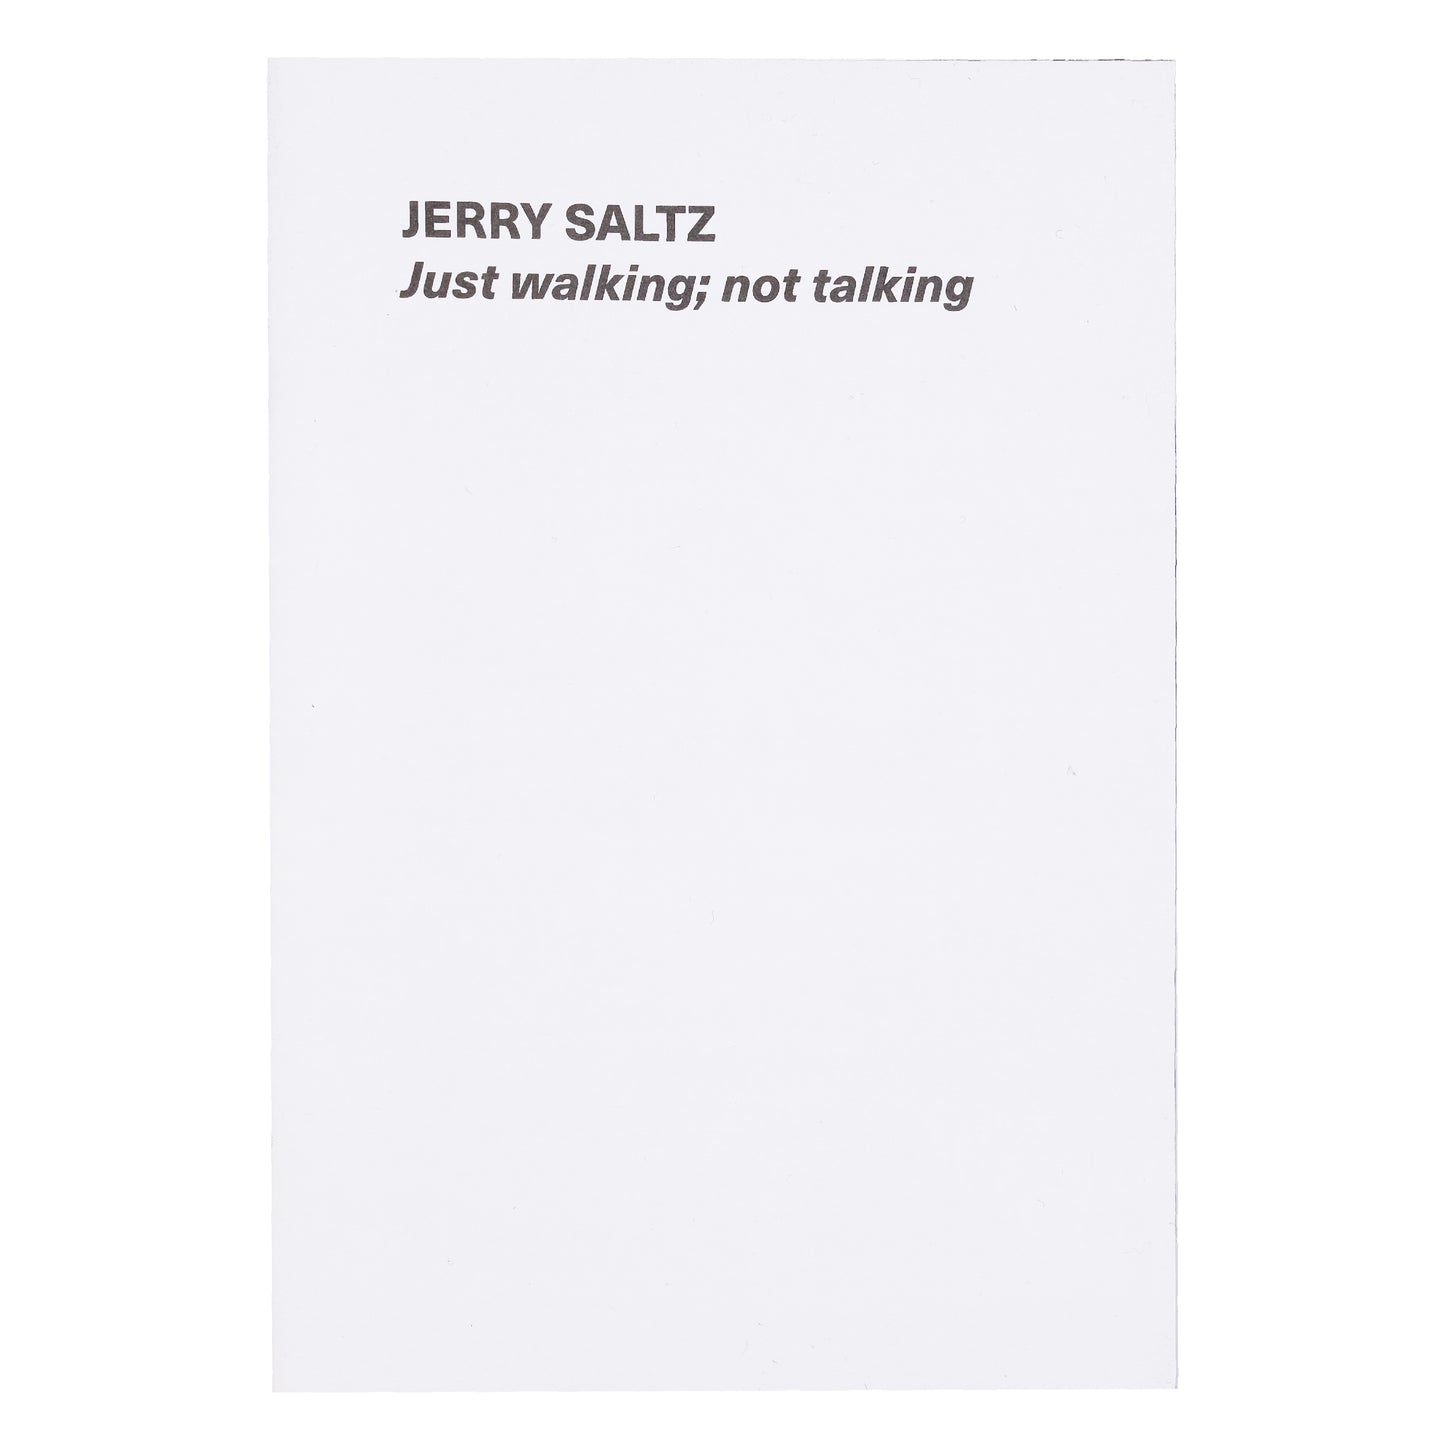 Innen - Jerry Saltz - Just walking; not talking